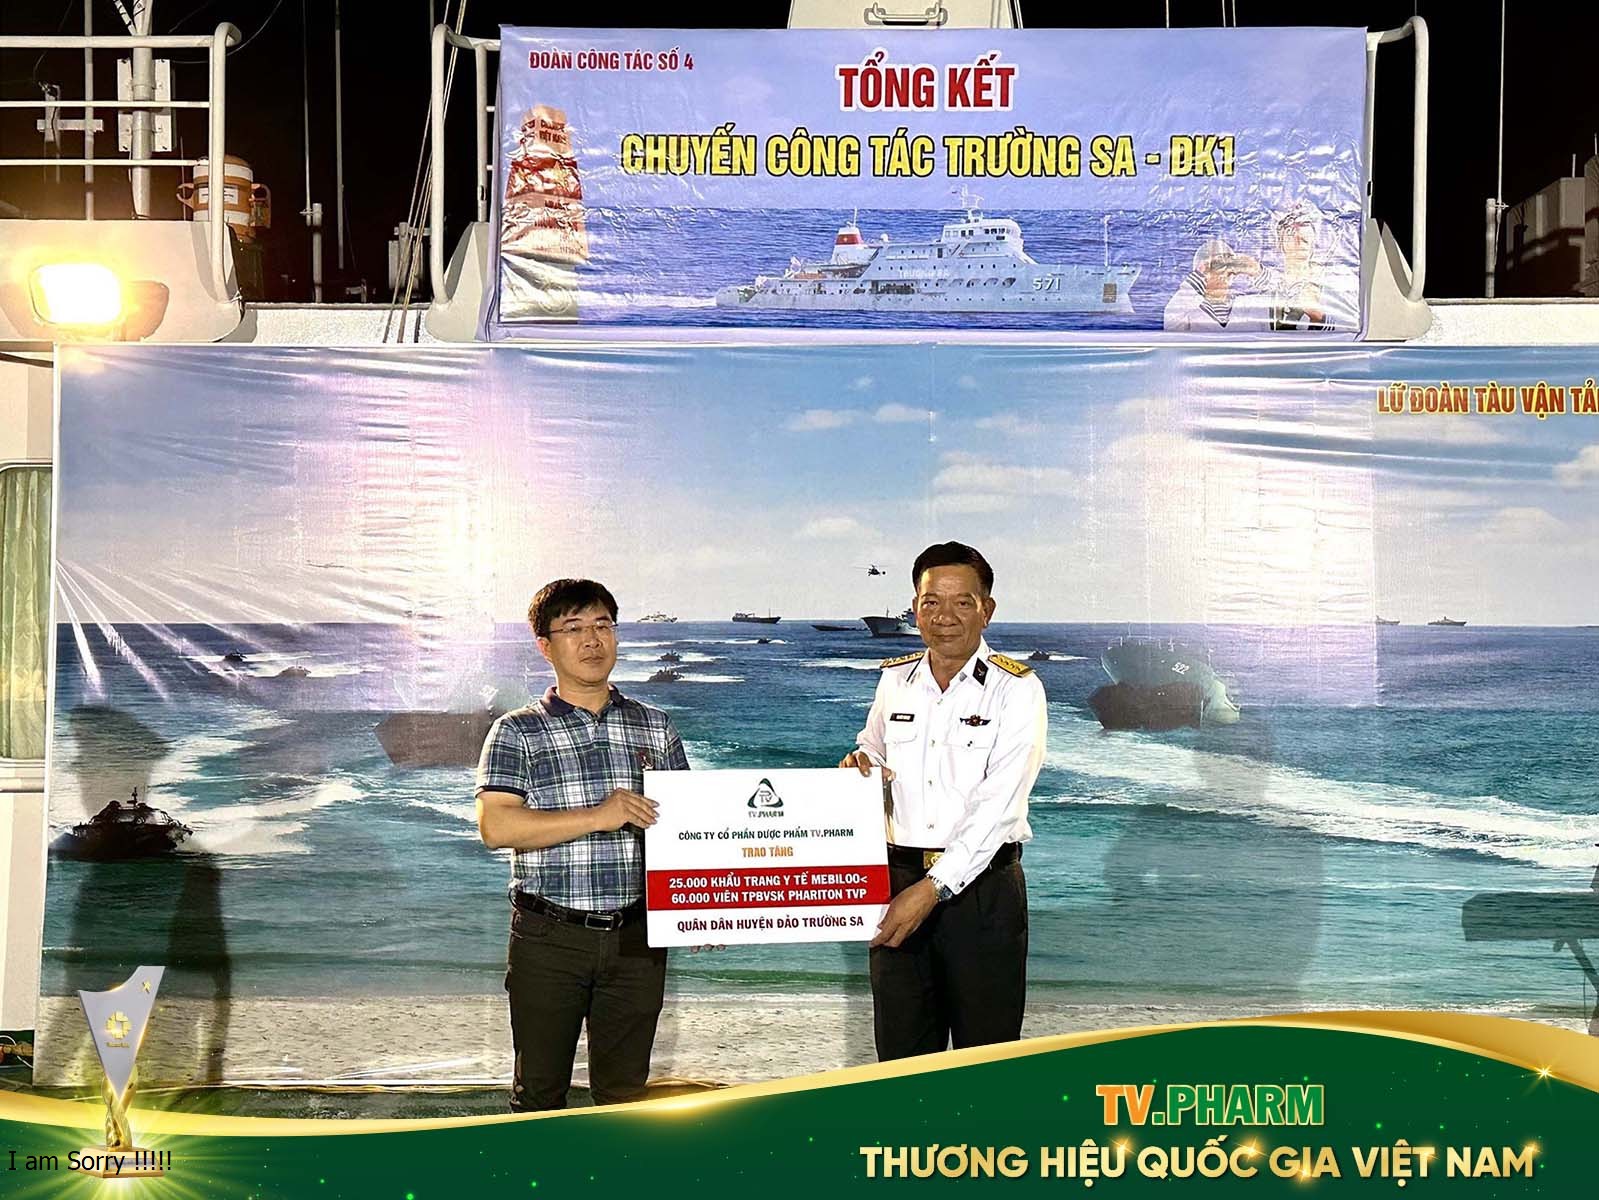 Đại diện Ban chỉ huy tàu Trường Sa 571 tiếp nhận thuốc y tế từ ông Hà Ngọc Sơn - Tổng Giám đốc TV.PHARM gửi tặng quân dân huyện đảo Trường Sa.